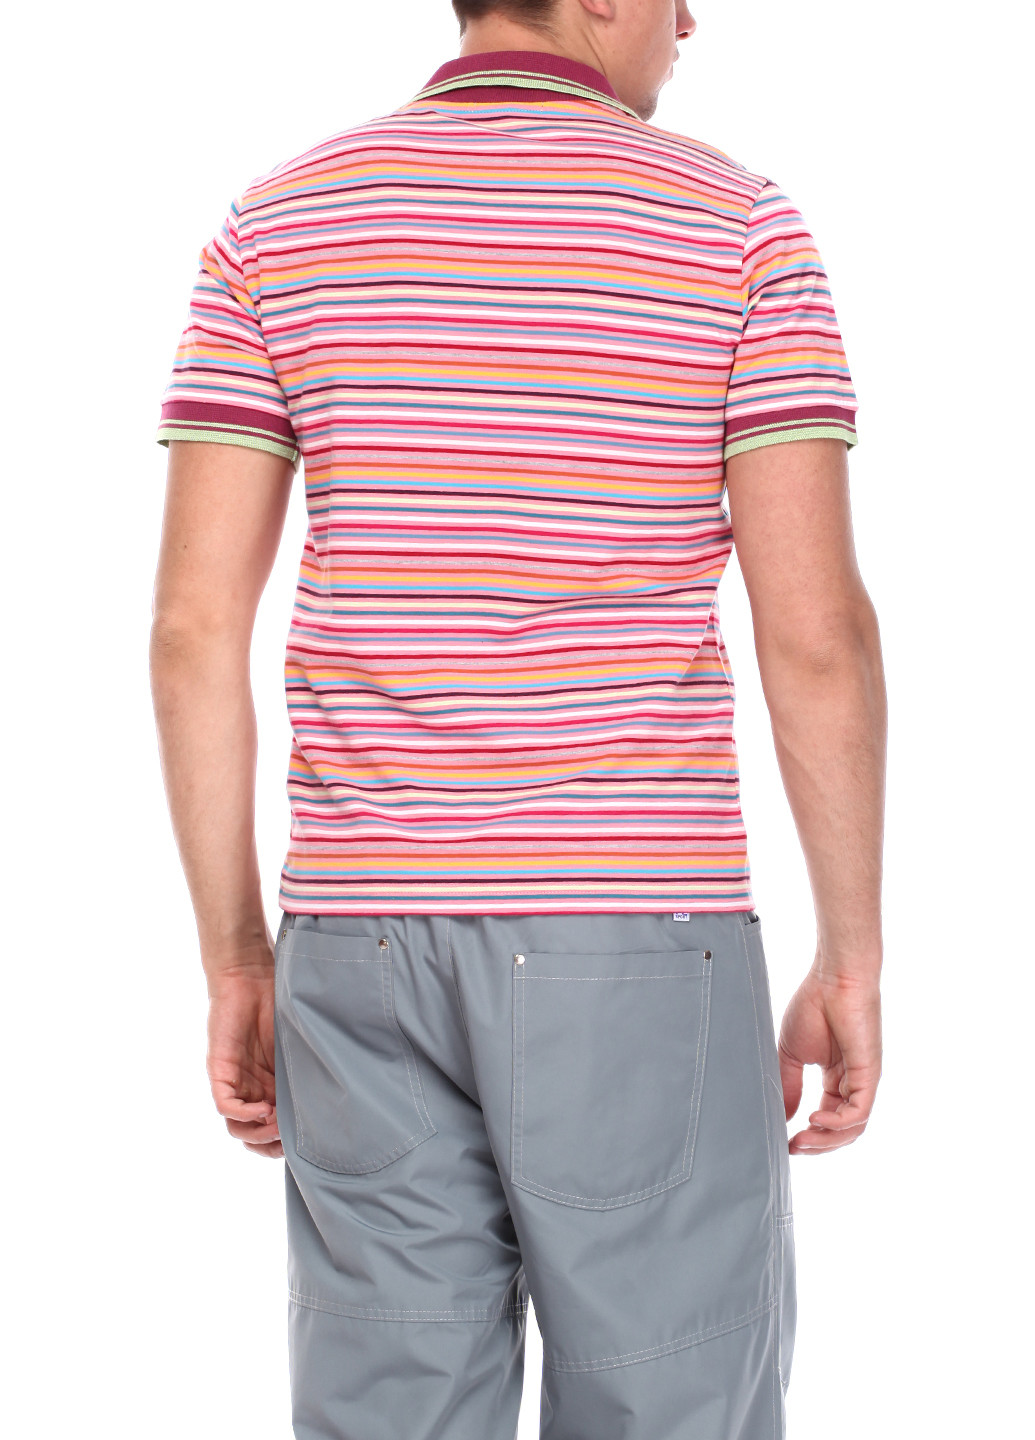 Бордовая футболка-поло для мужчин Flash в полоску